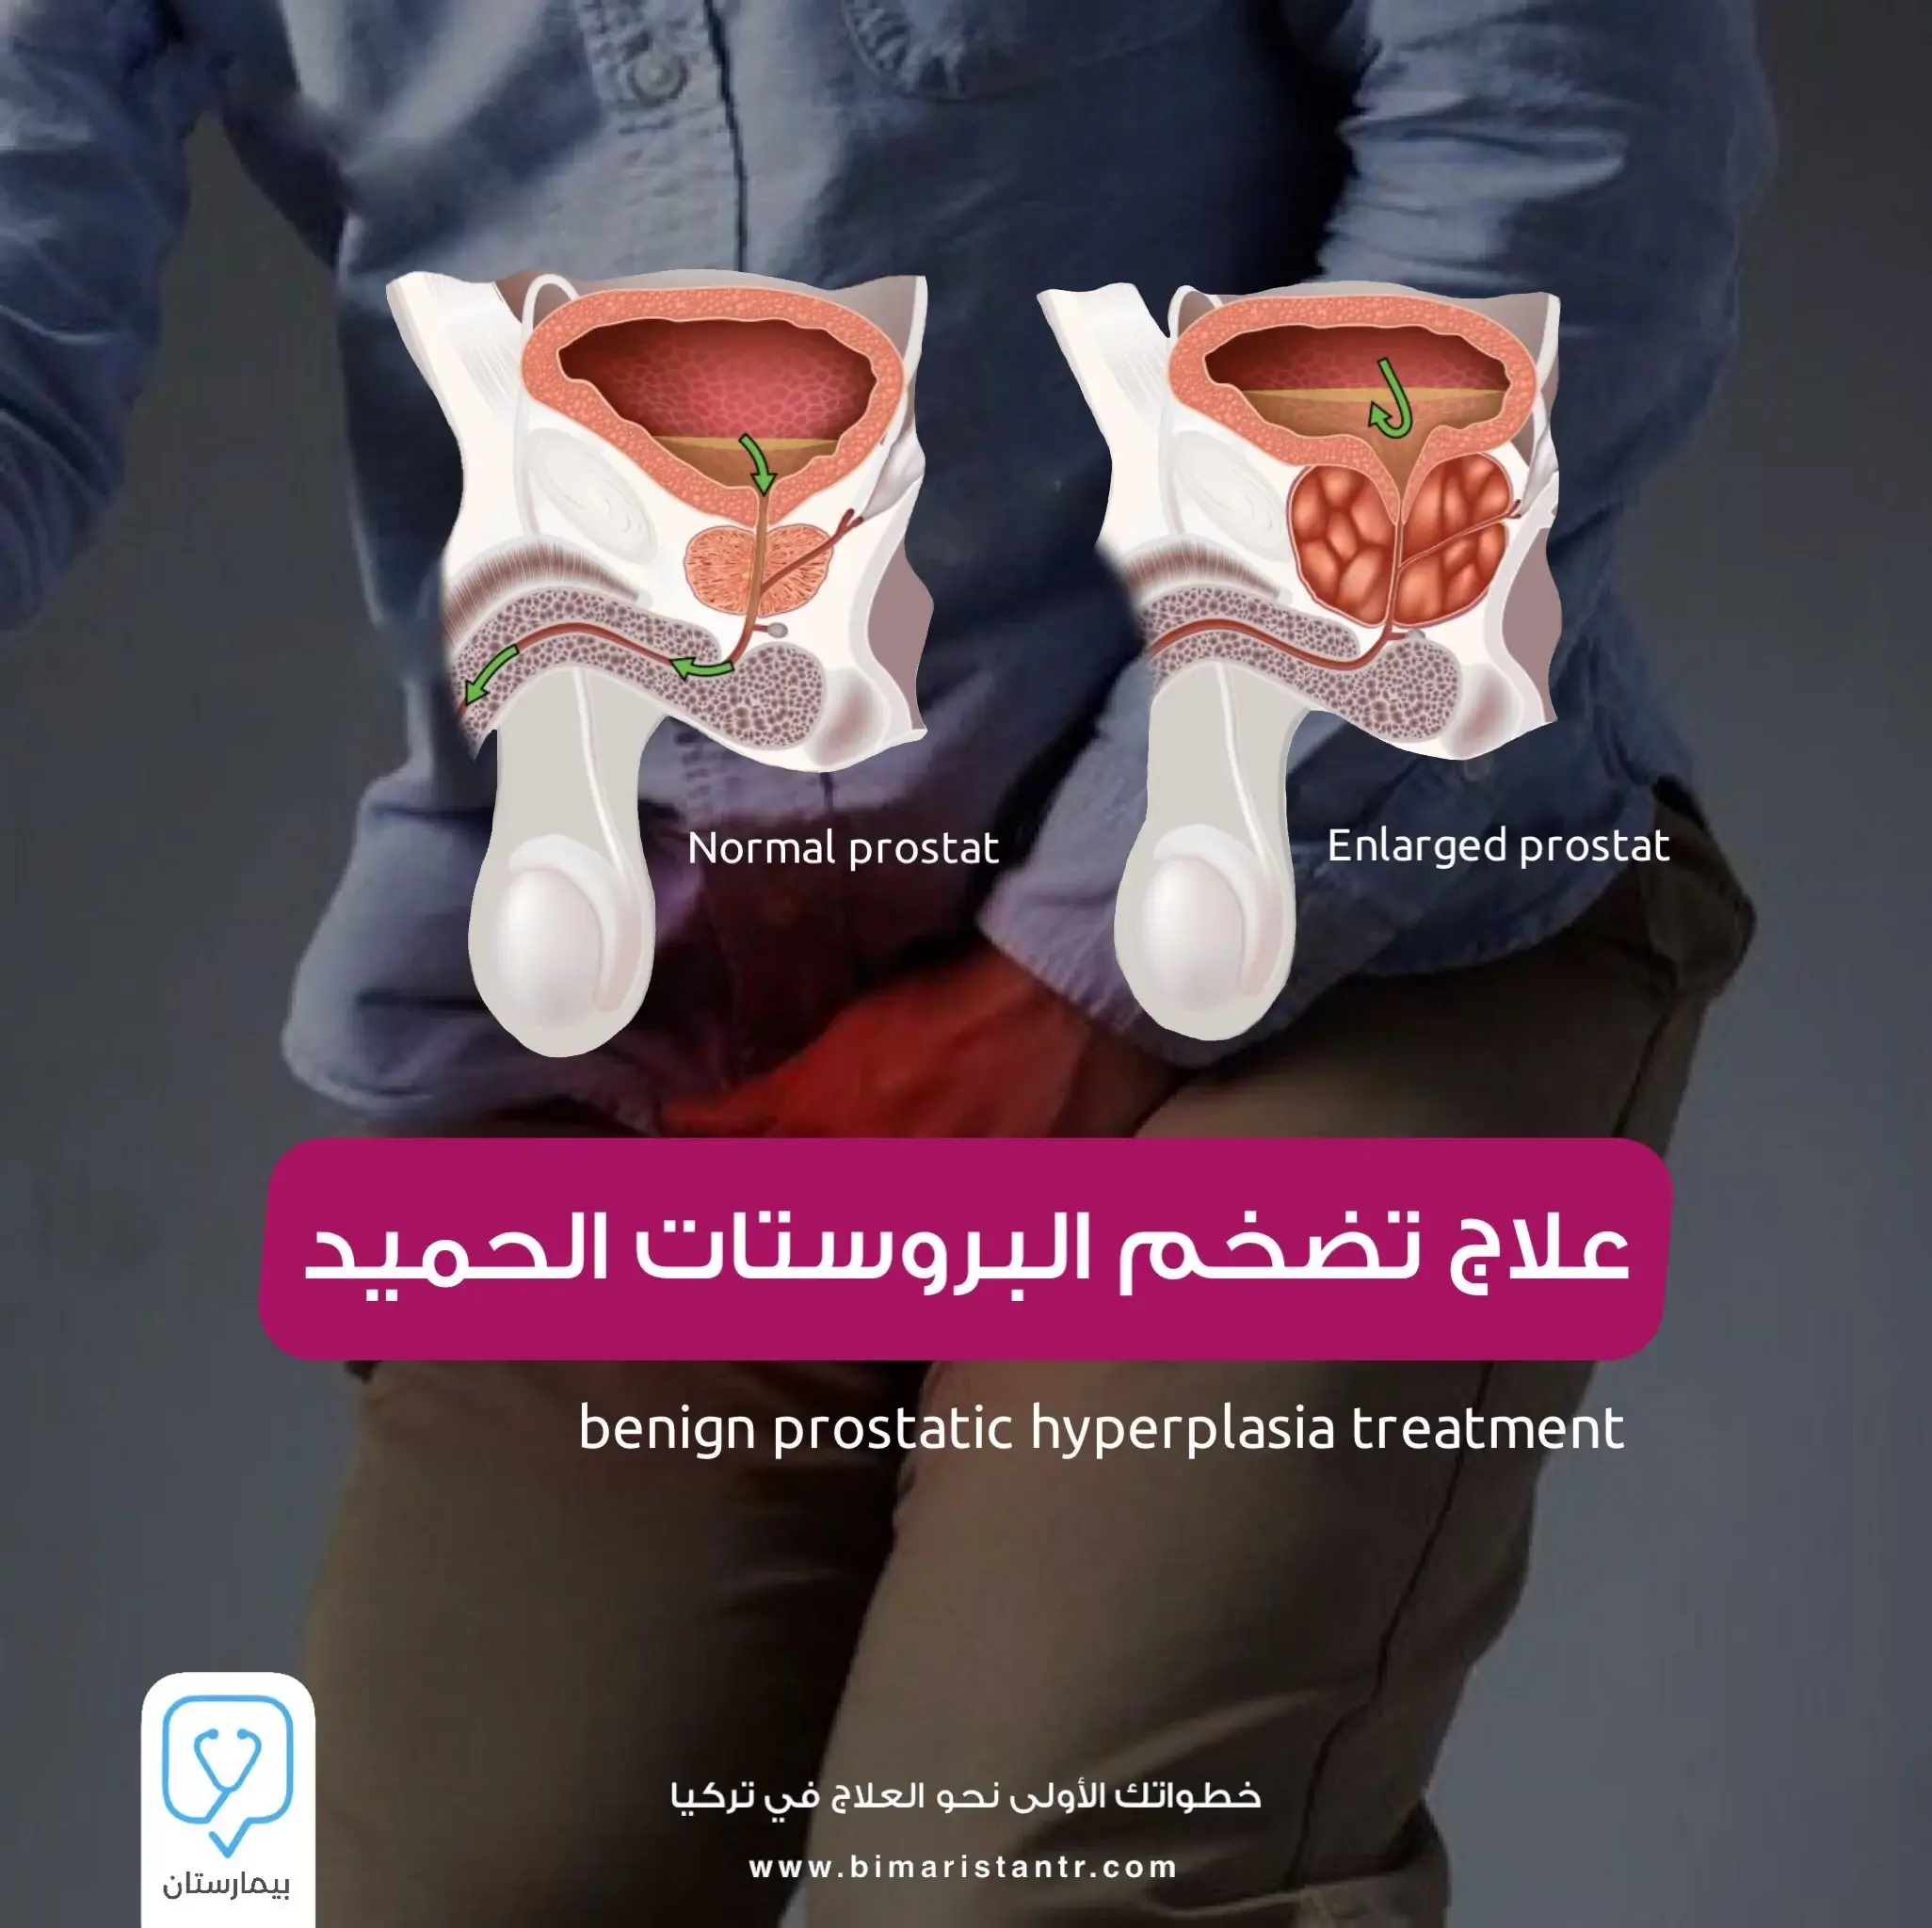 Benign prostatic hyperplasia treatment